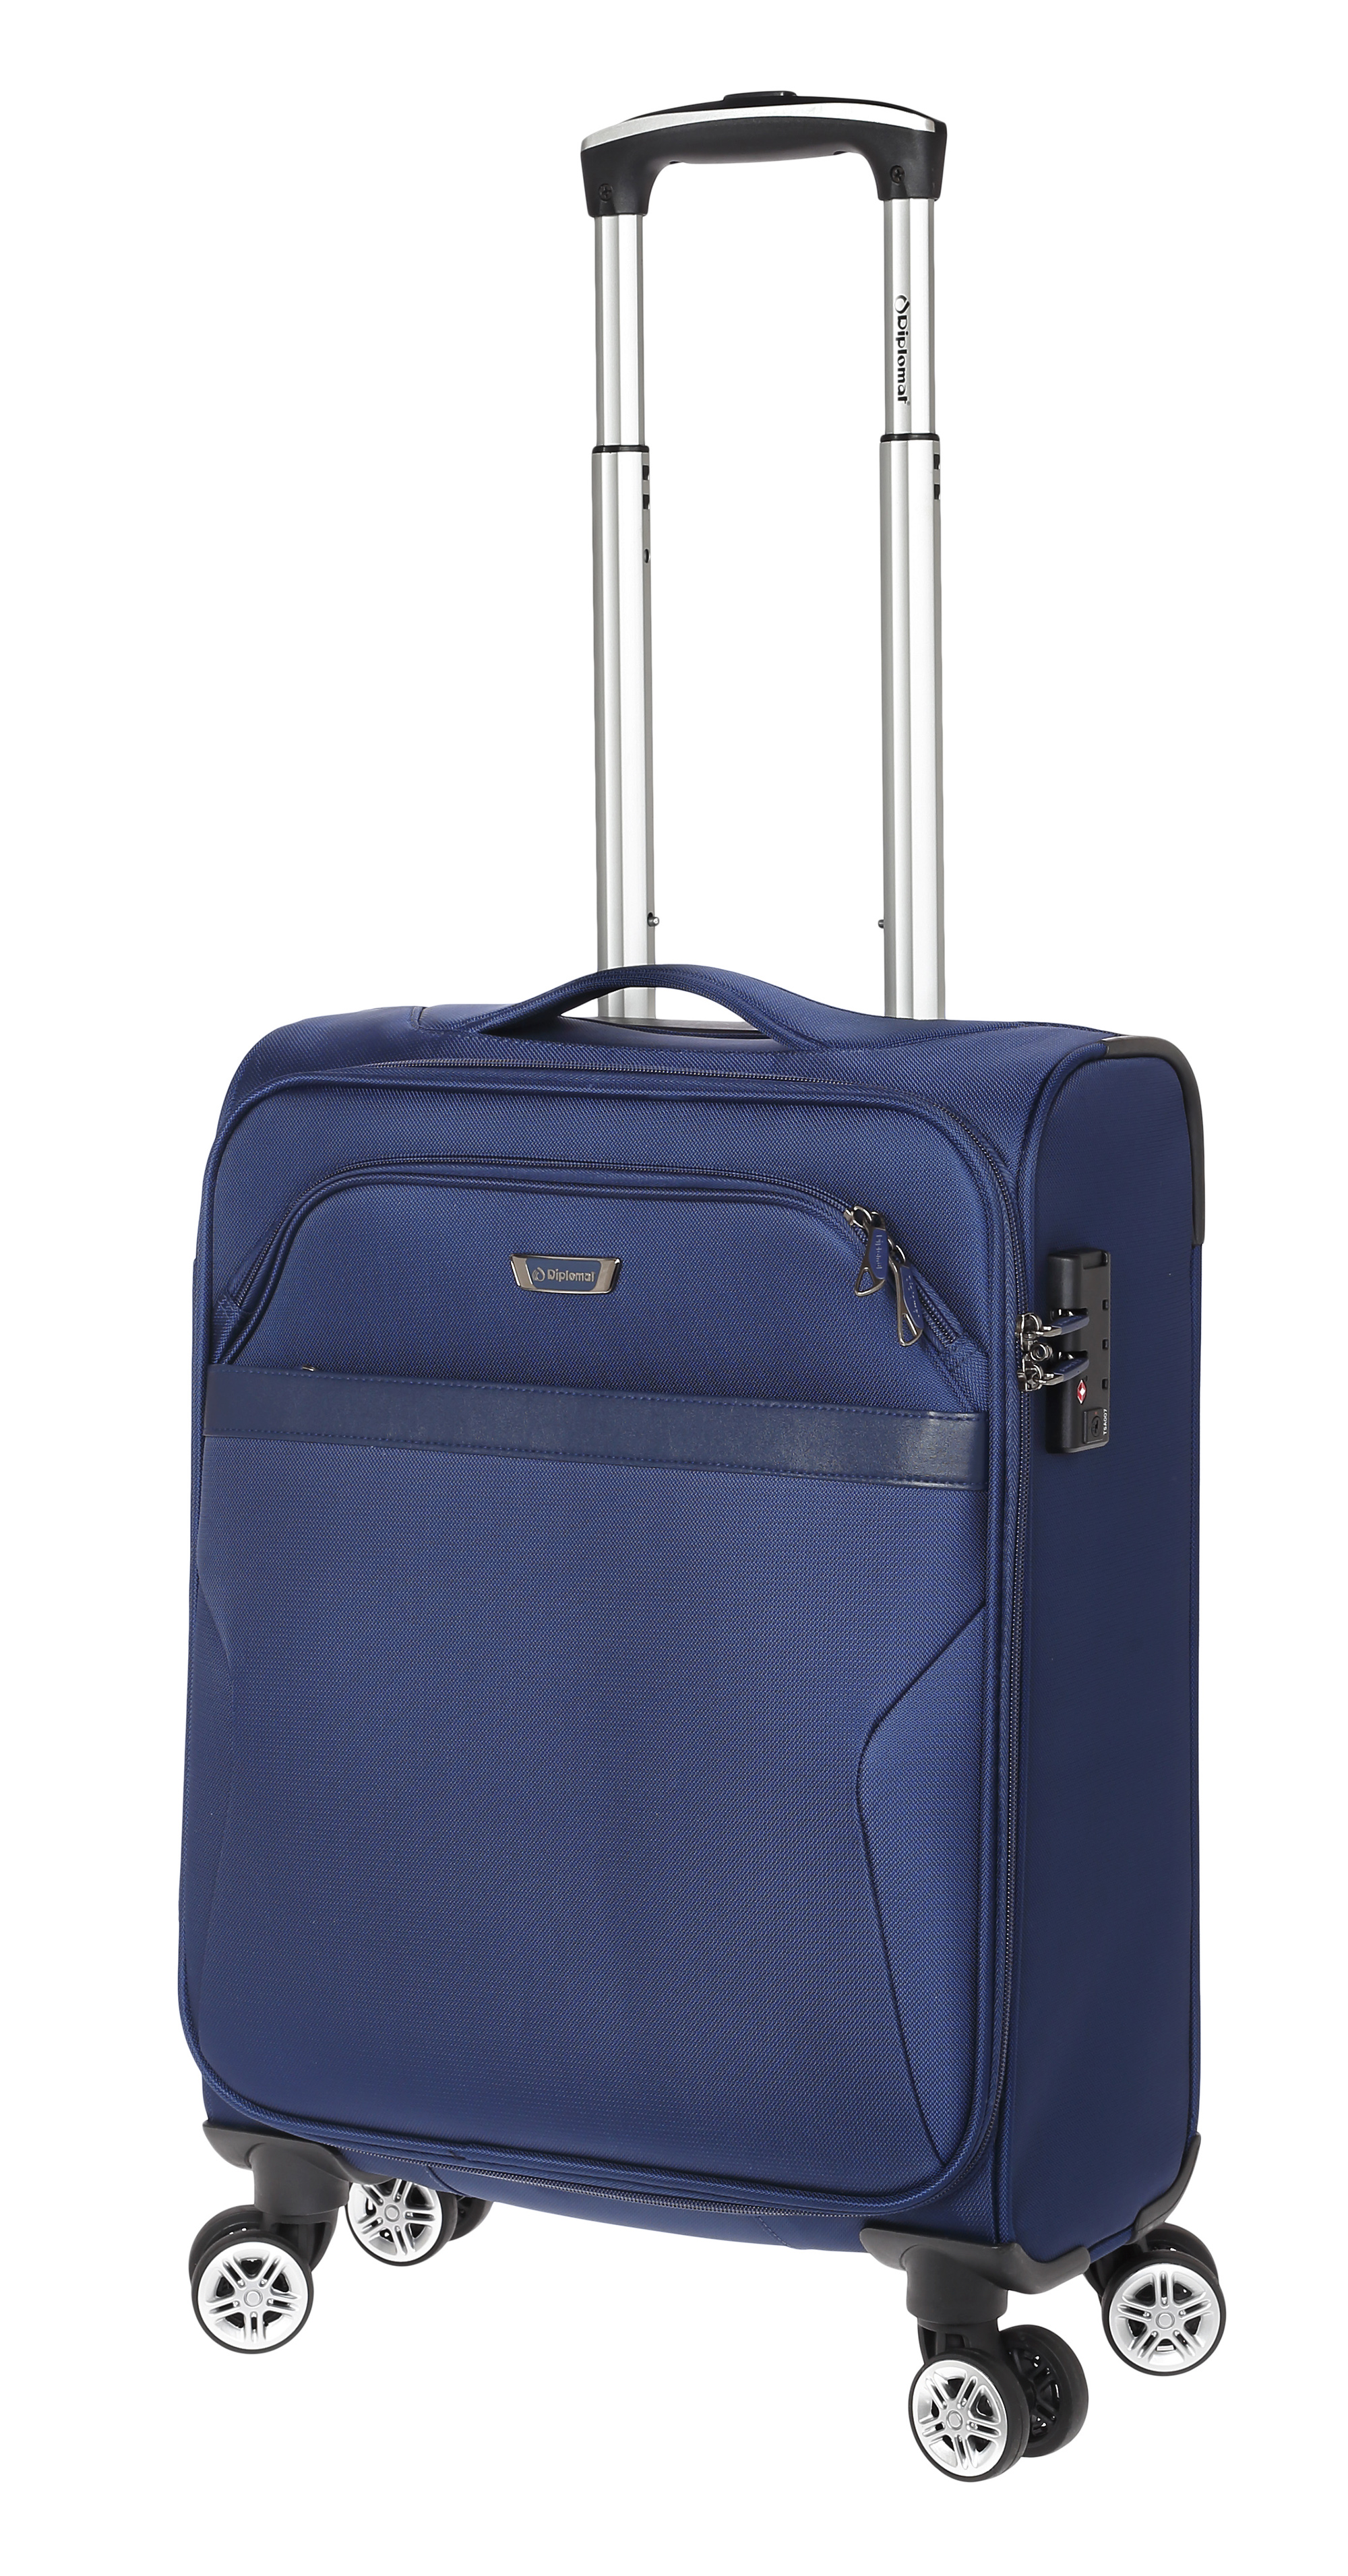 Βαλίτσα Καμπίνας με 4 Ρόδες Diplomat ZC998-S Μπλε